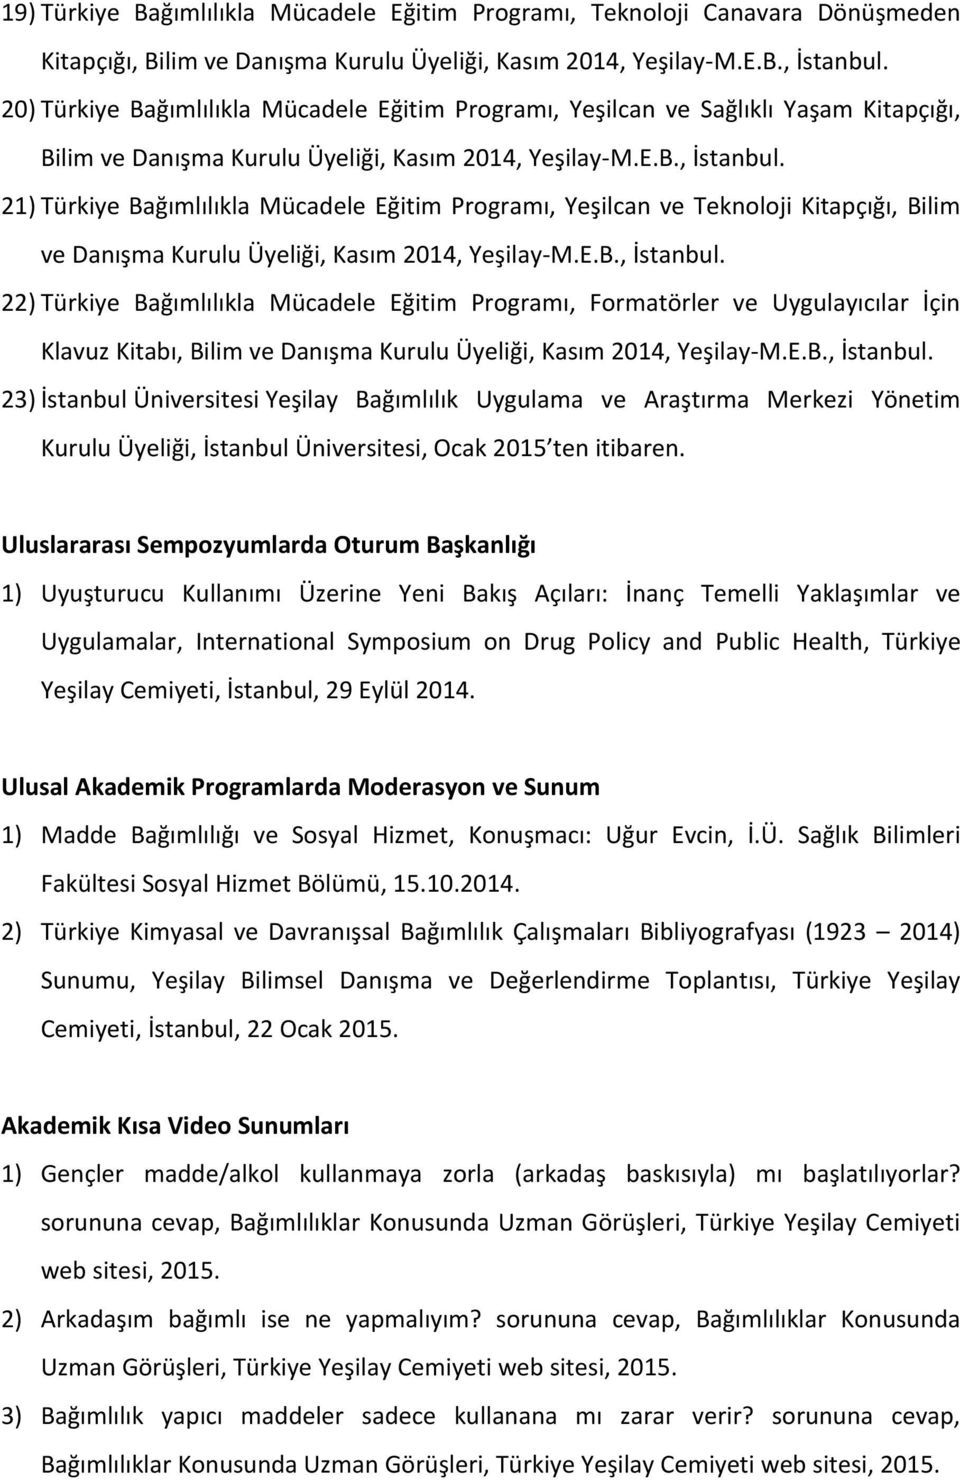 21) Türkiye Bağımlılıkla Mücadele Eğitim Programı, Yeşilcan ve Teknoloji Kitapçığı, Bilim ve Danışma Kurulu Üyeliği, Kasım 2014, Yeşilay-M.E.B., İstanbul.